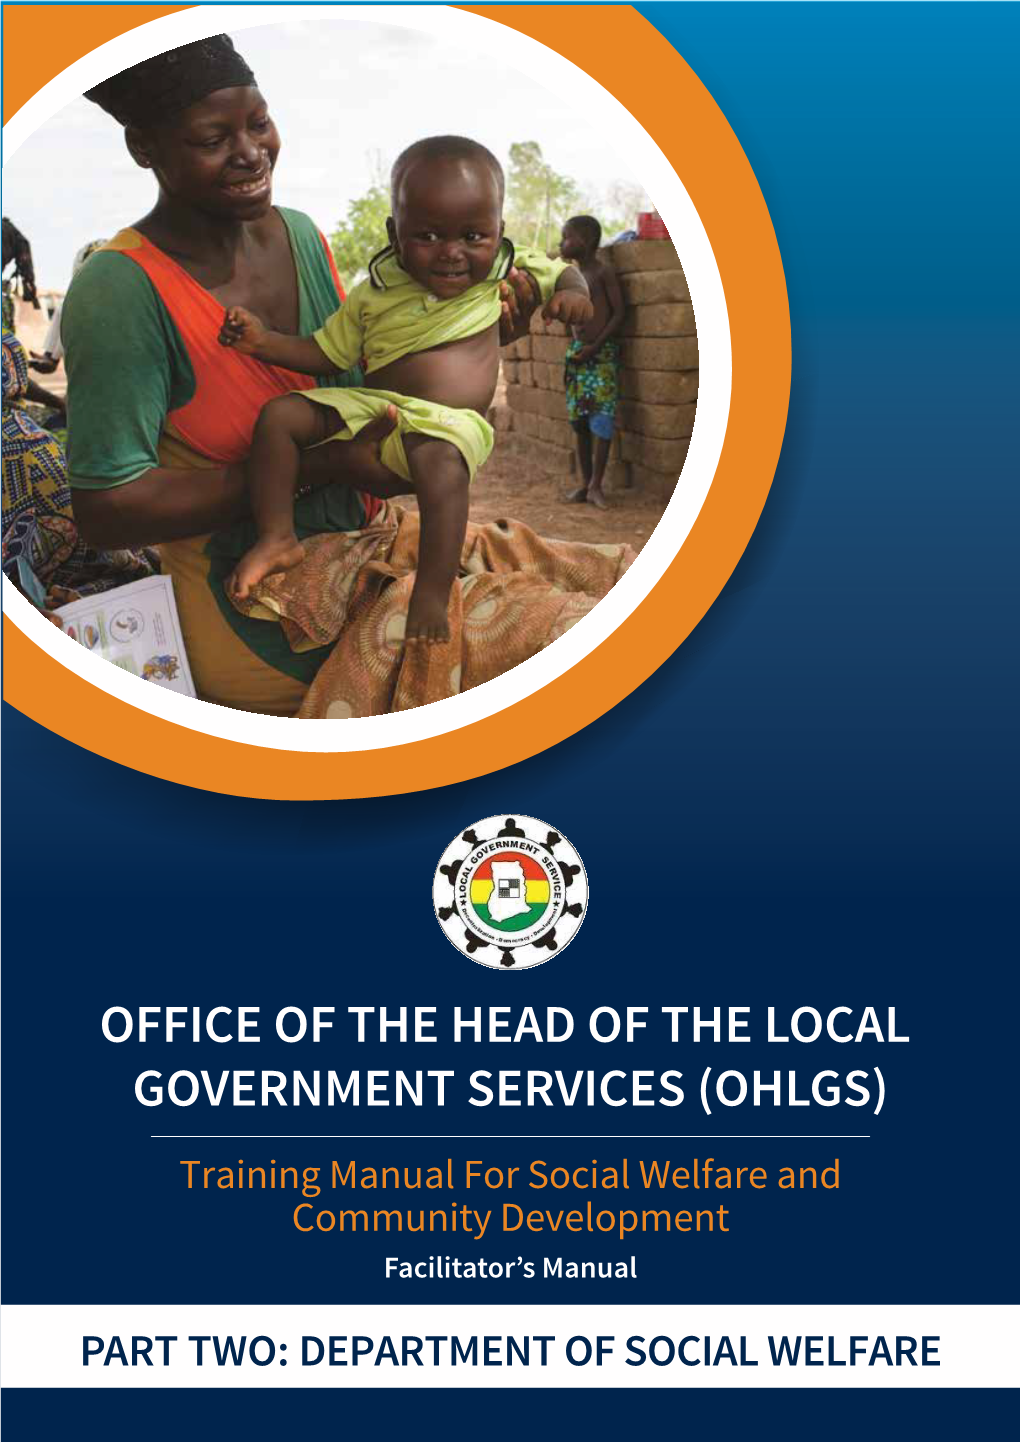 OFFICE of the HEAD of the LOCAL GOVERNMENT SERVICES (OHLGS) �Rai�I�� �A��Al �Or Social Welfare A�� �O����I�� �E�Elo��E�� Facilitator’S Manual